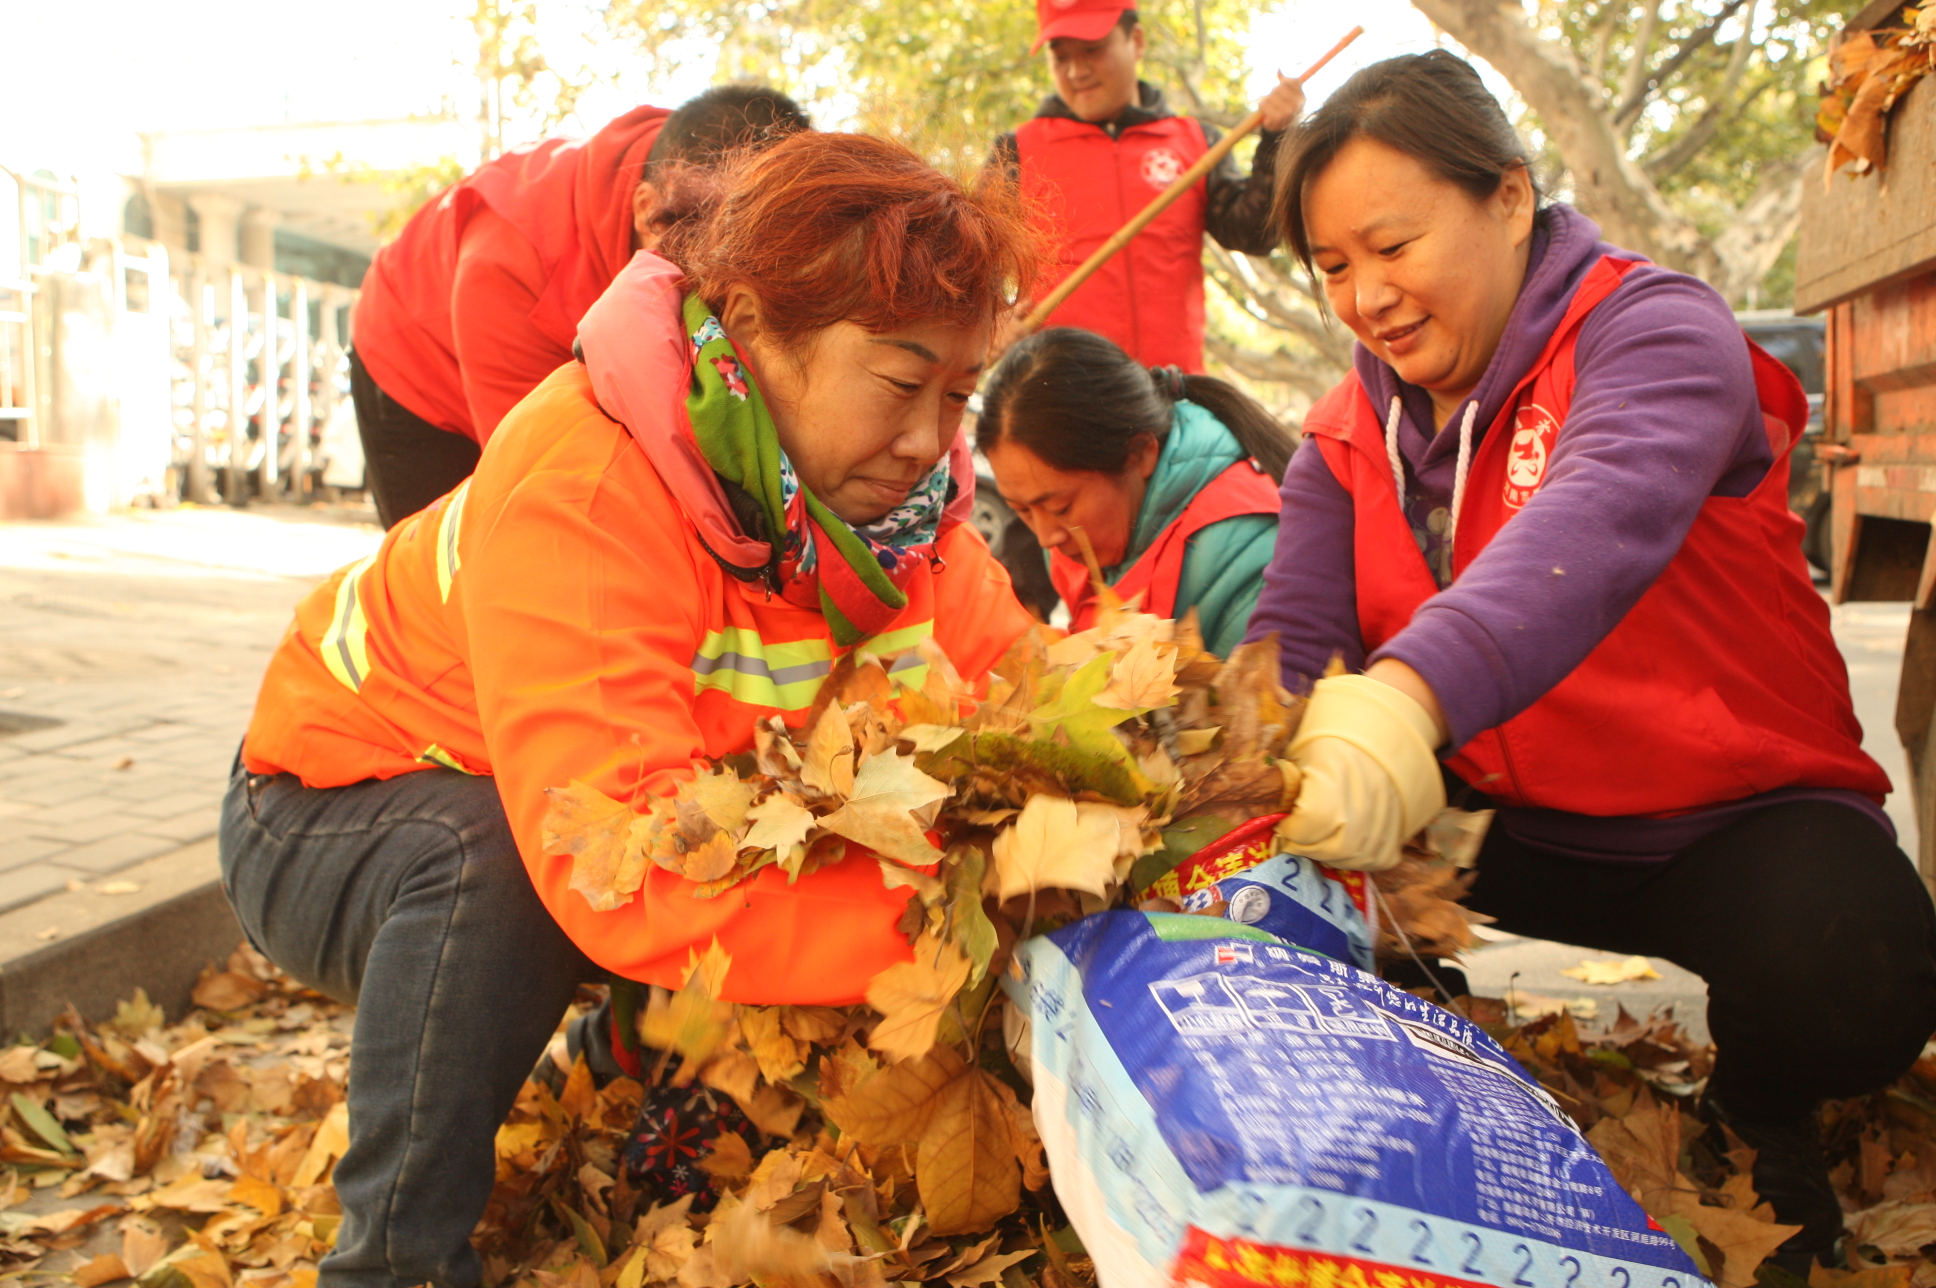 图片新闻:解放区1000名志愿者清扫落叶保整洁